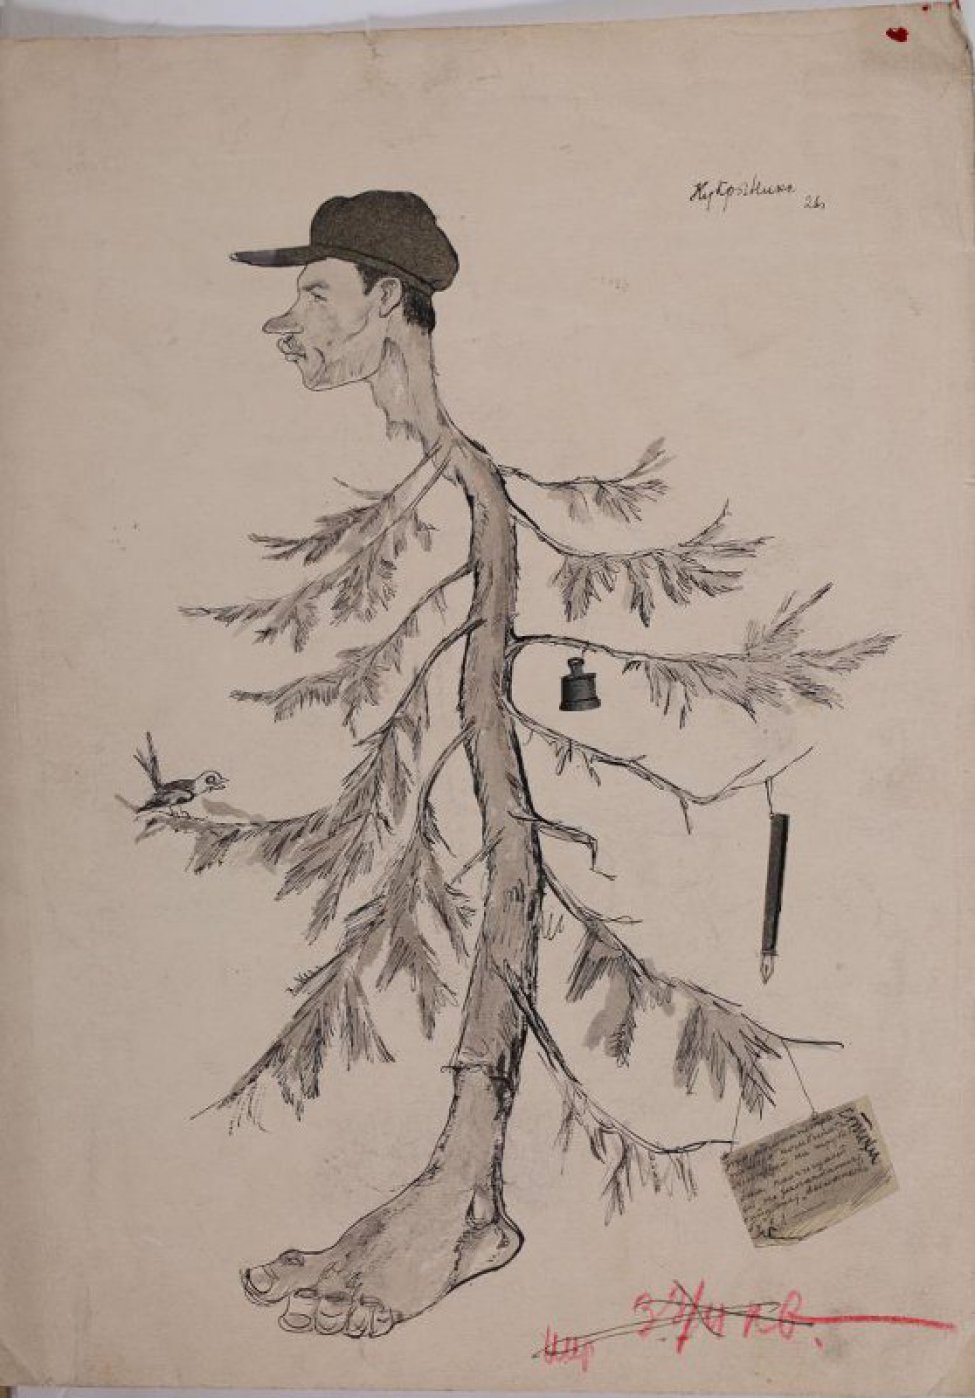 Стилизованное изображение ствола елки, вверху - в виде профиля мужской головы в фуражке, внизу - человеческой ступни. На ветках ели слева сидит птичка; справа - висит колокольчик, перьевая ручка и текст стихотворения.